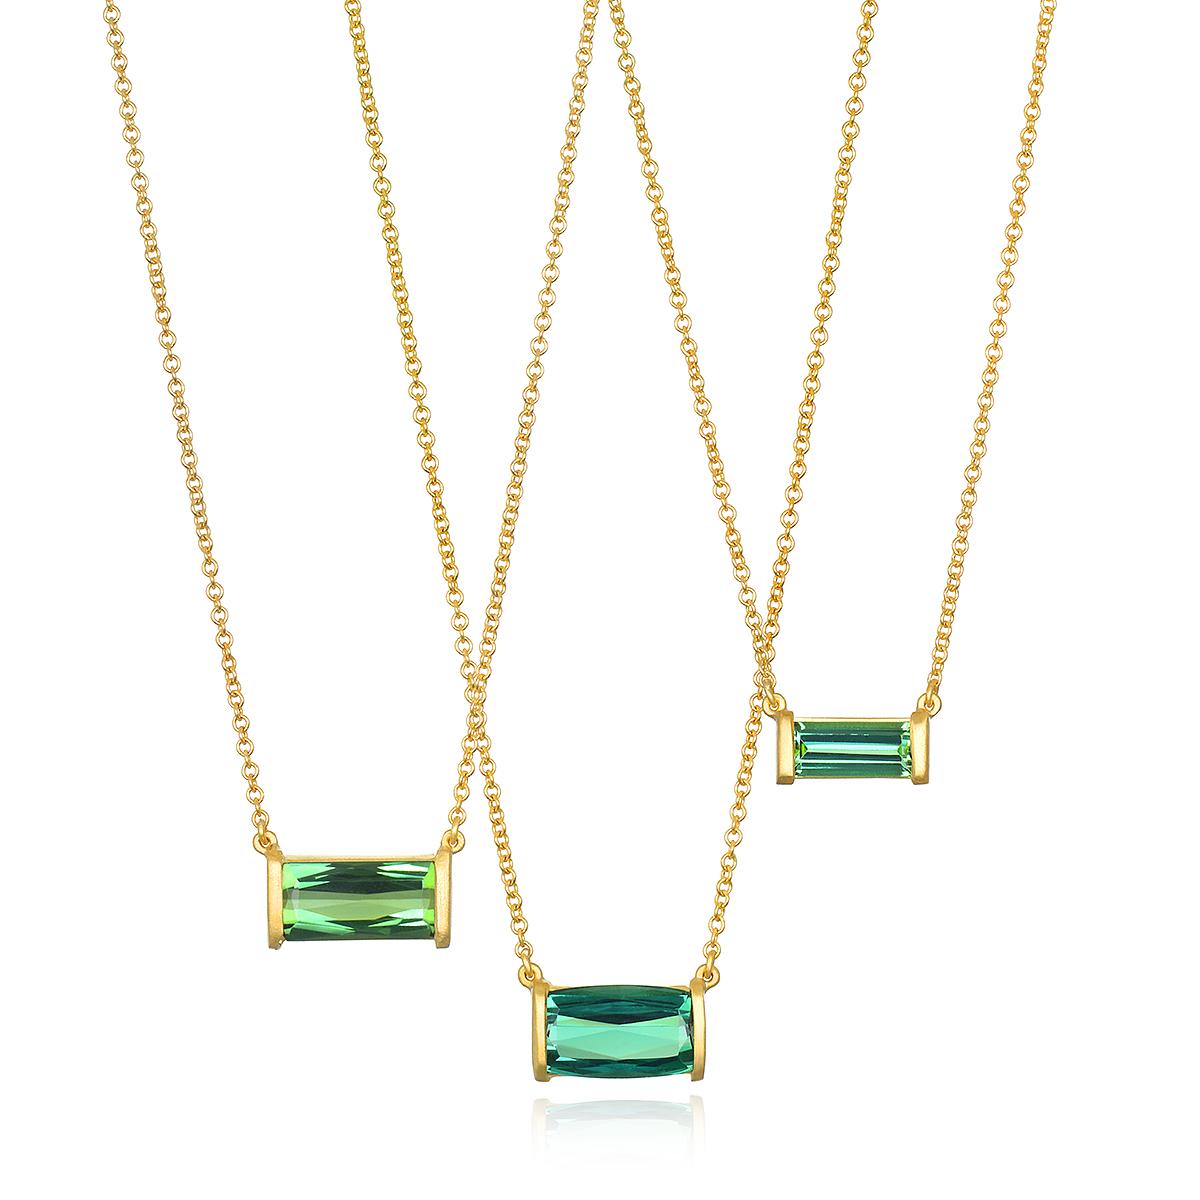 Die 18K Gold Bar Set French Cut Green Tourmaline Necklace von Faye Kim besticht durch einen auffälligen, farbenfrohen Edelstein in mattem Gold, der jede Garderobe zum Funkeln bringt und sowohl allein als auch mit anderen Halsketten getragen werden